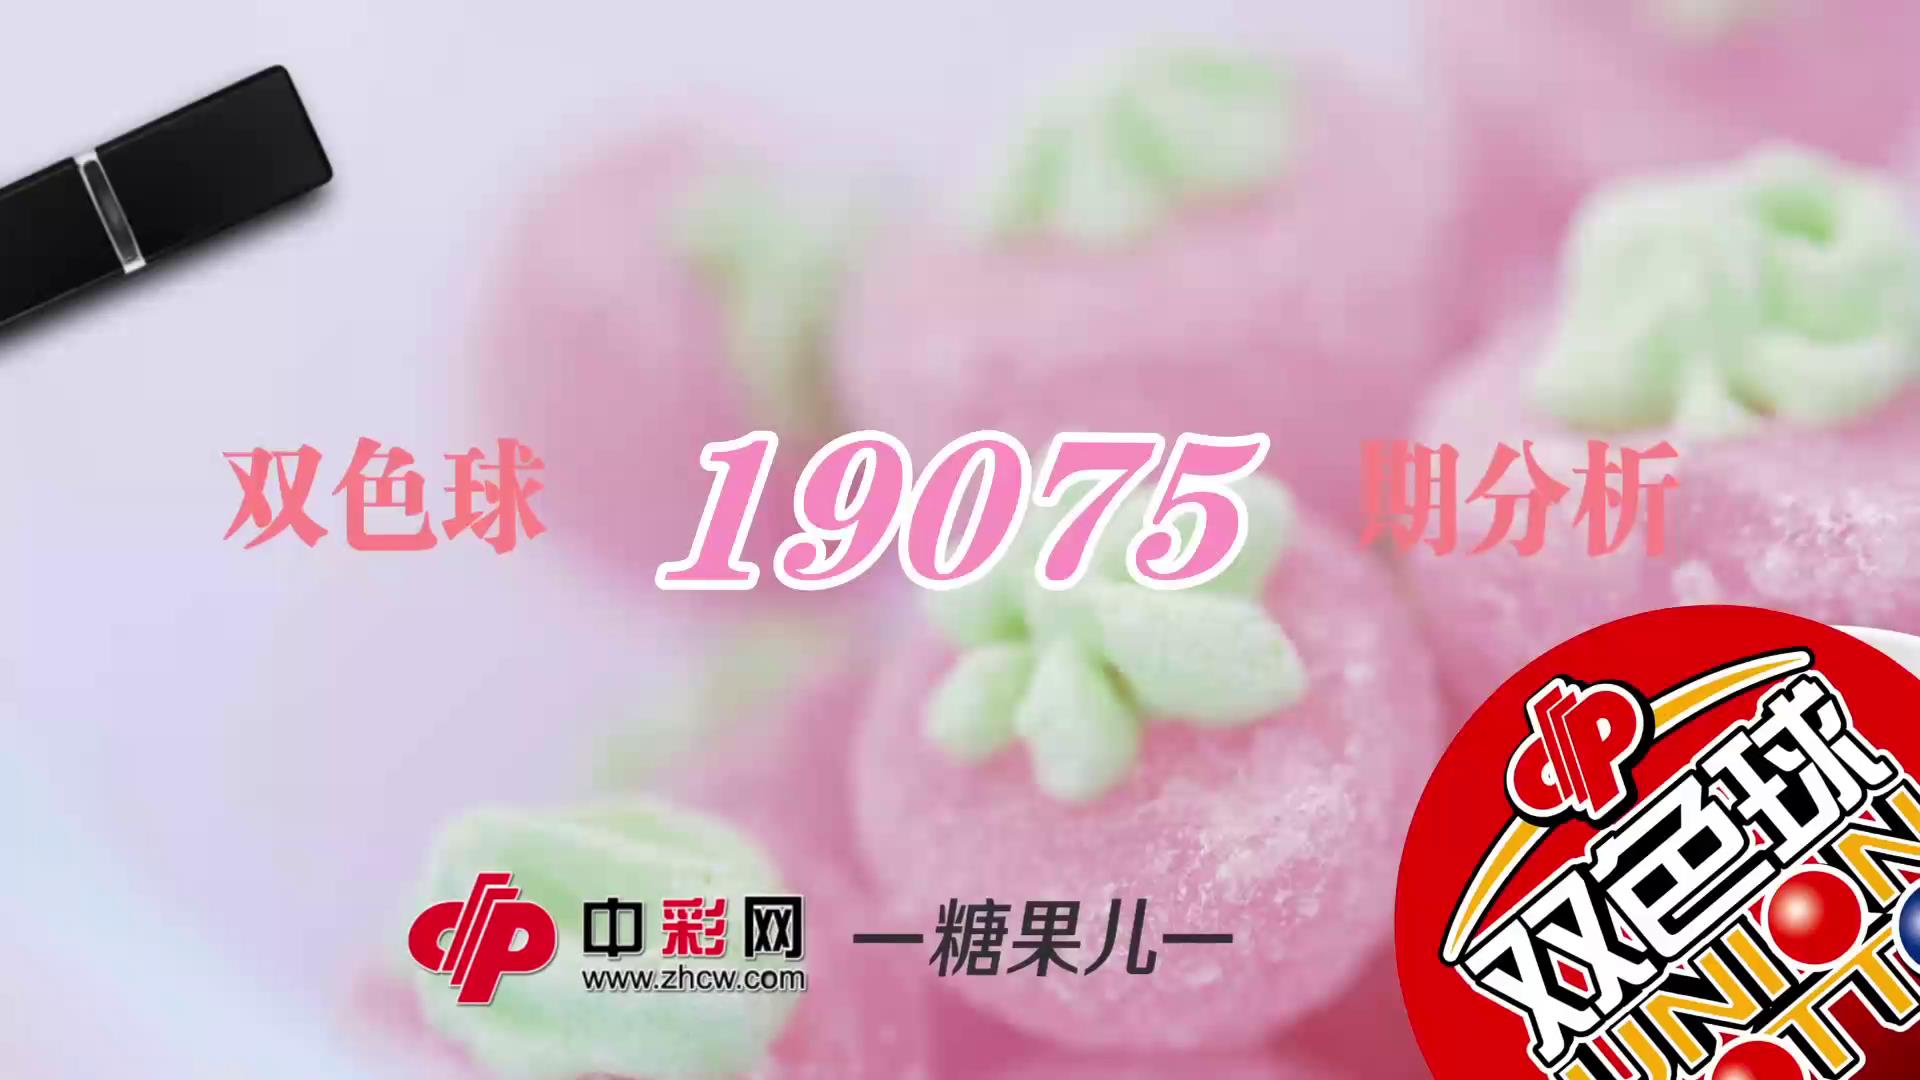 【中彩视频】糖果儿双色球第19075期